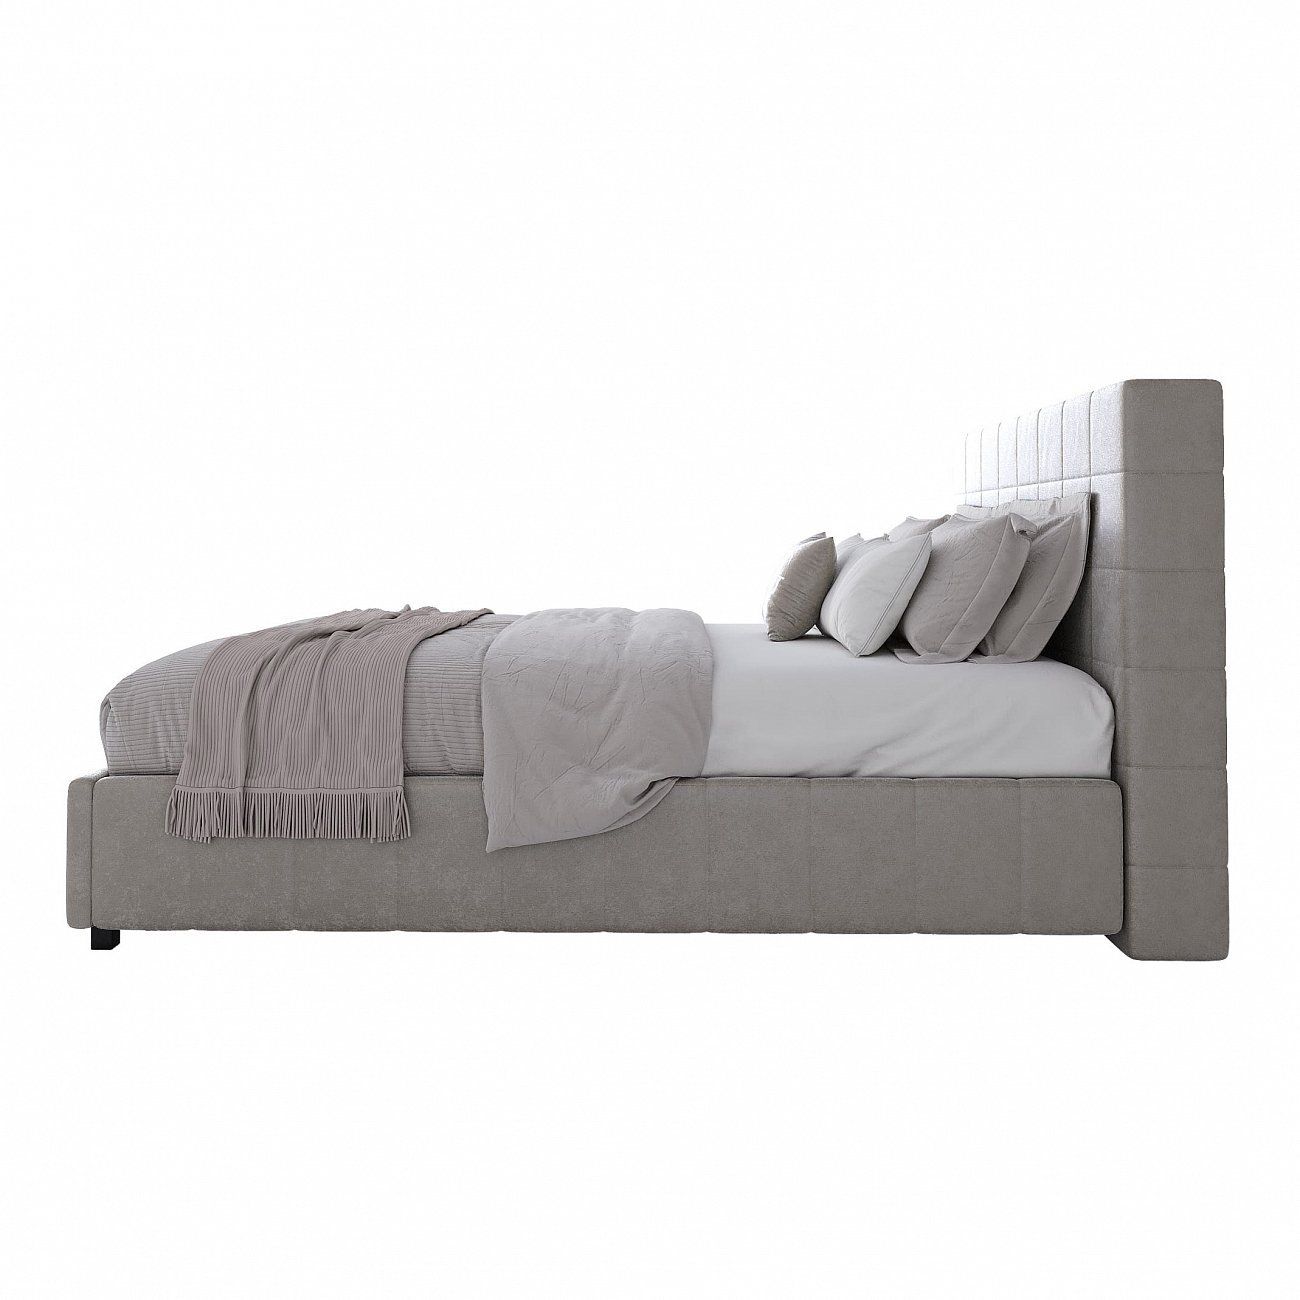 Shining Modern double bed 160x200 cm light beige